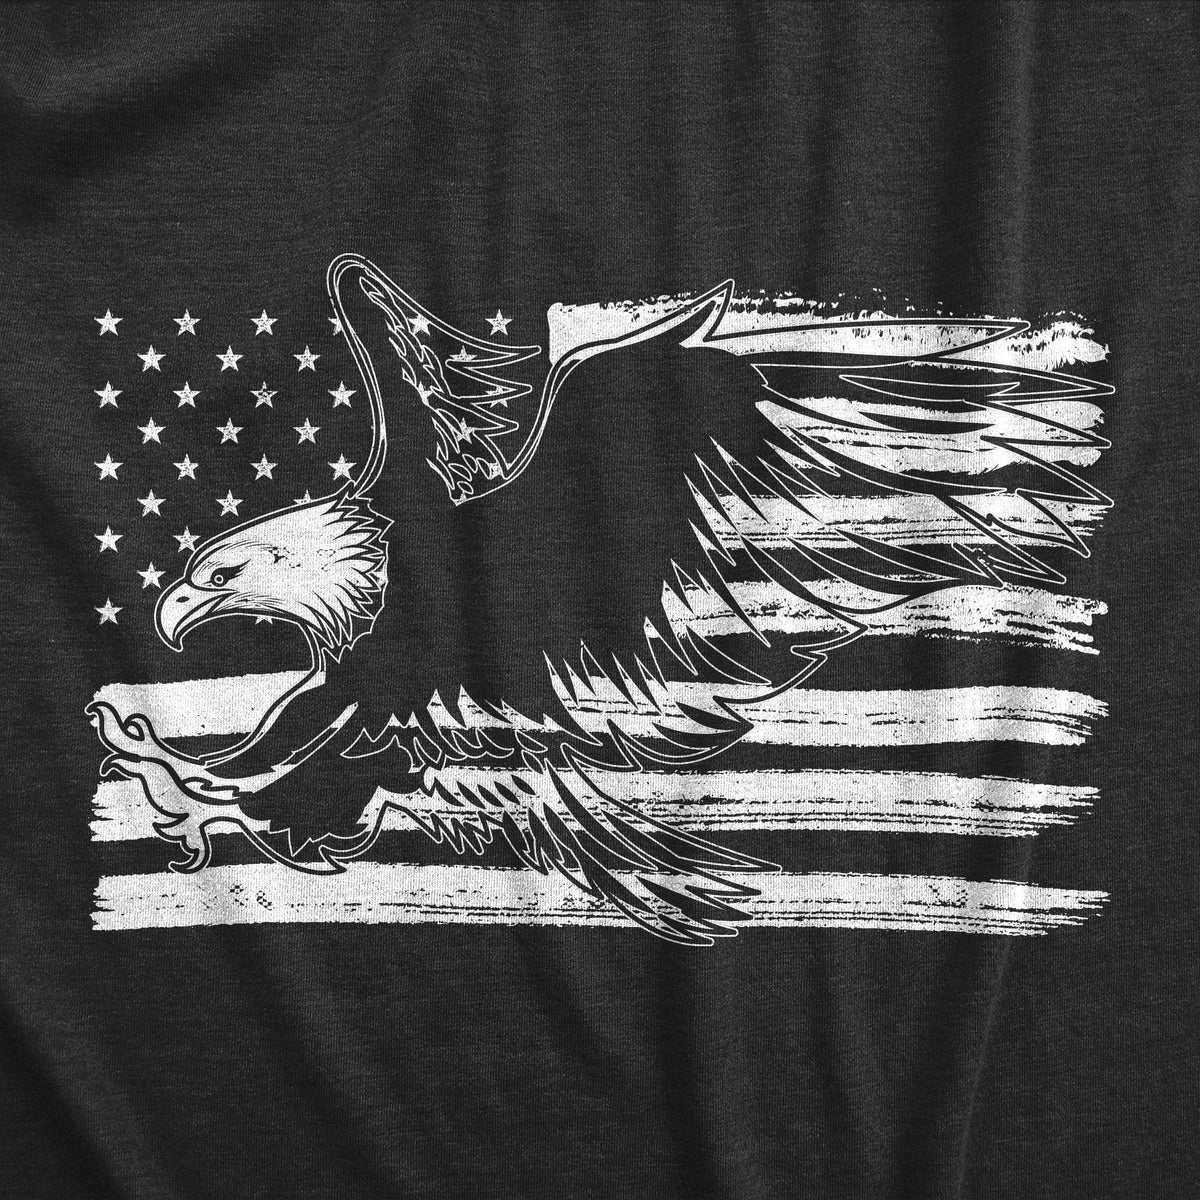 Eagle Over Grunge Flag Men&#39;s Tshirt - Crazy Dog T-Shirts